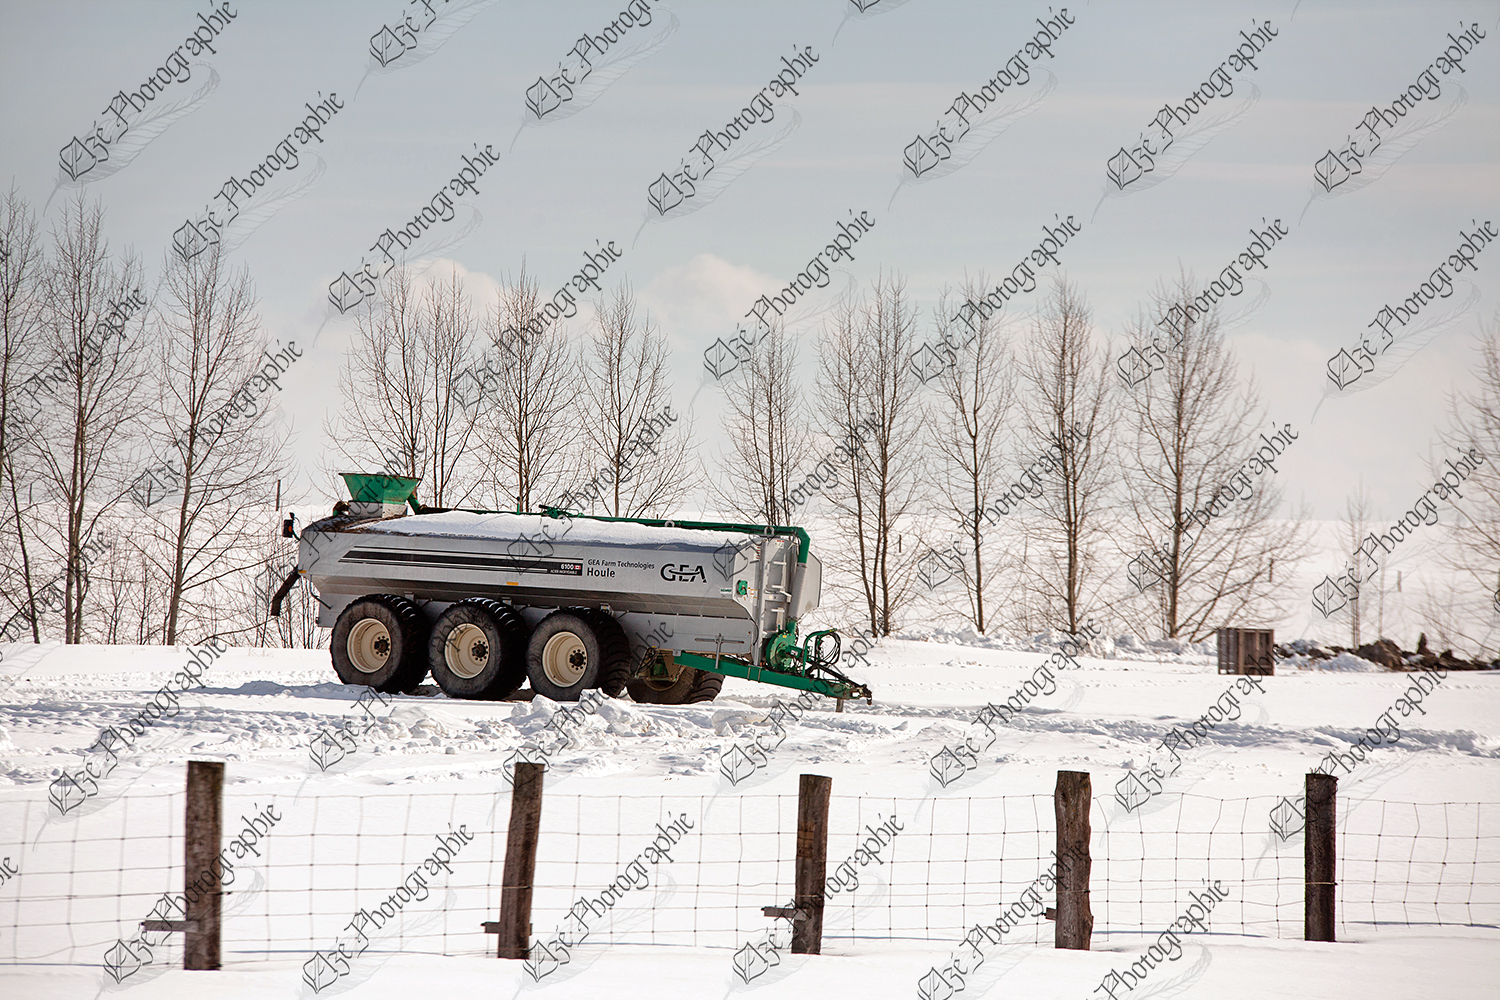 elze_photo_4797_gea_neige_reservoir_winter_container